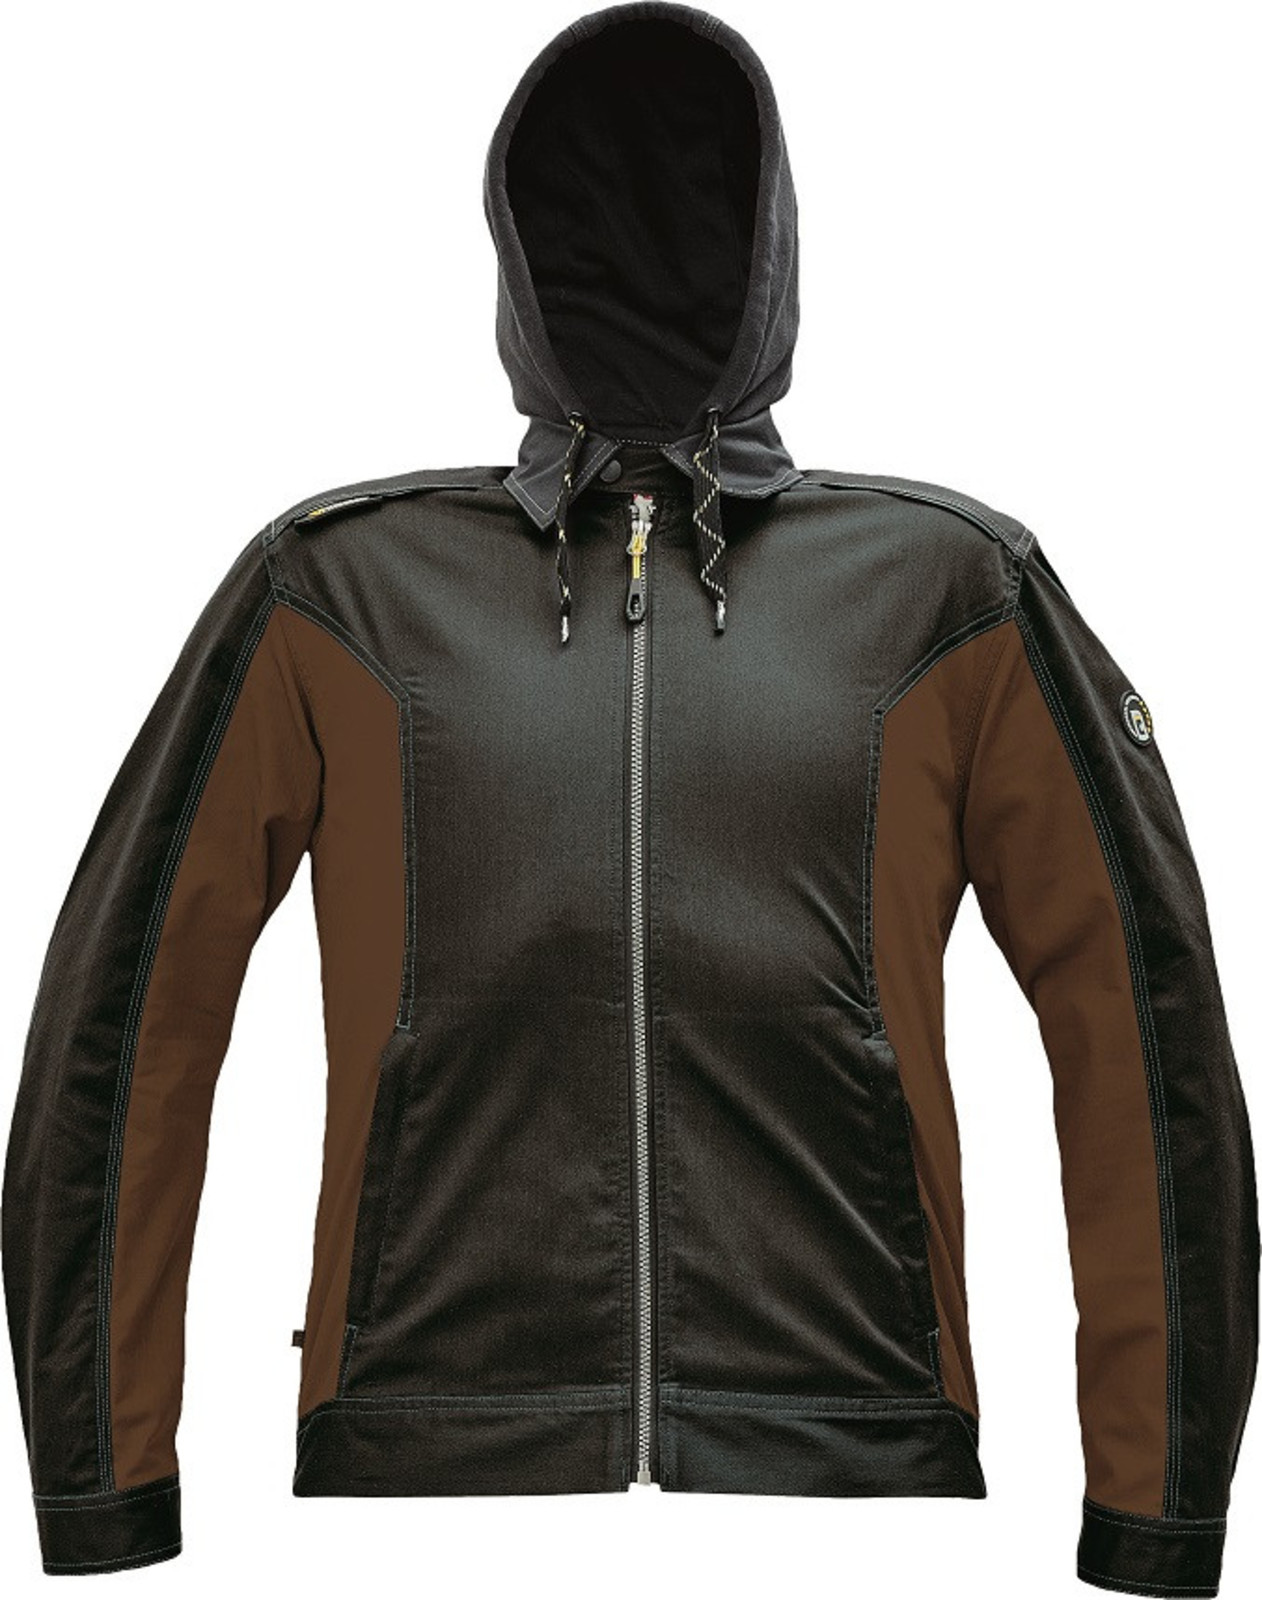 Strečová pracovná bunda Cerva Dayboro - veľkosť: 64, farba: tmavo hnedá